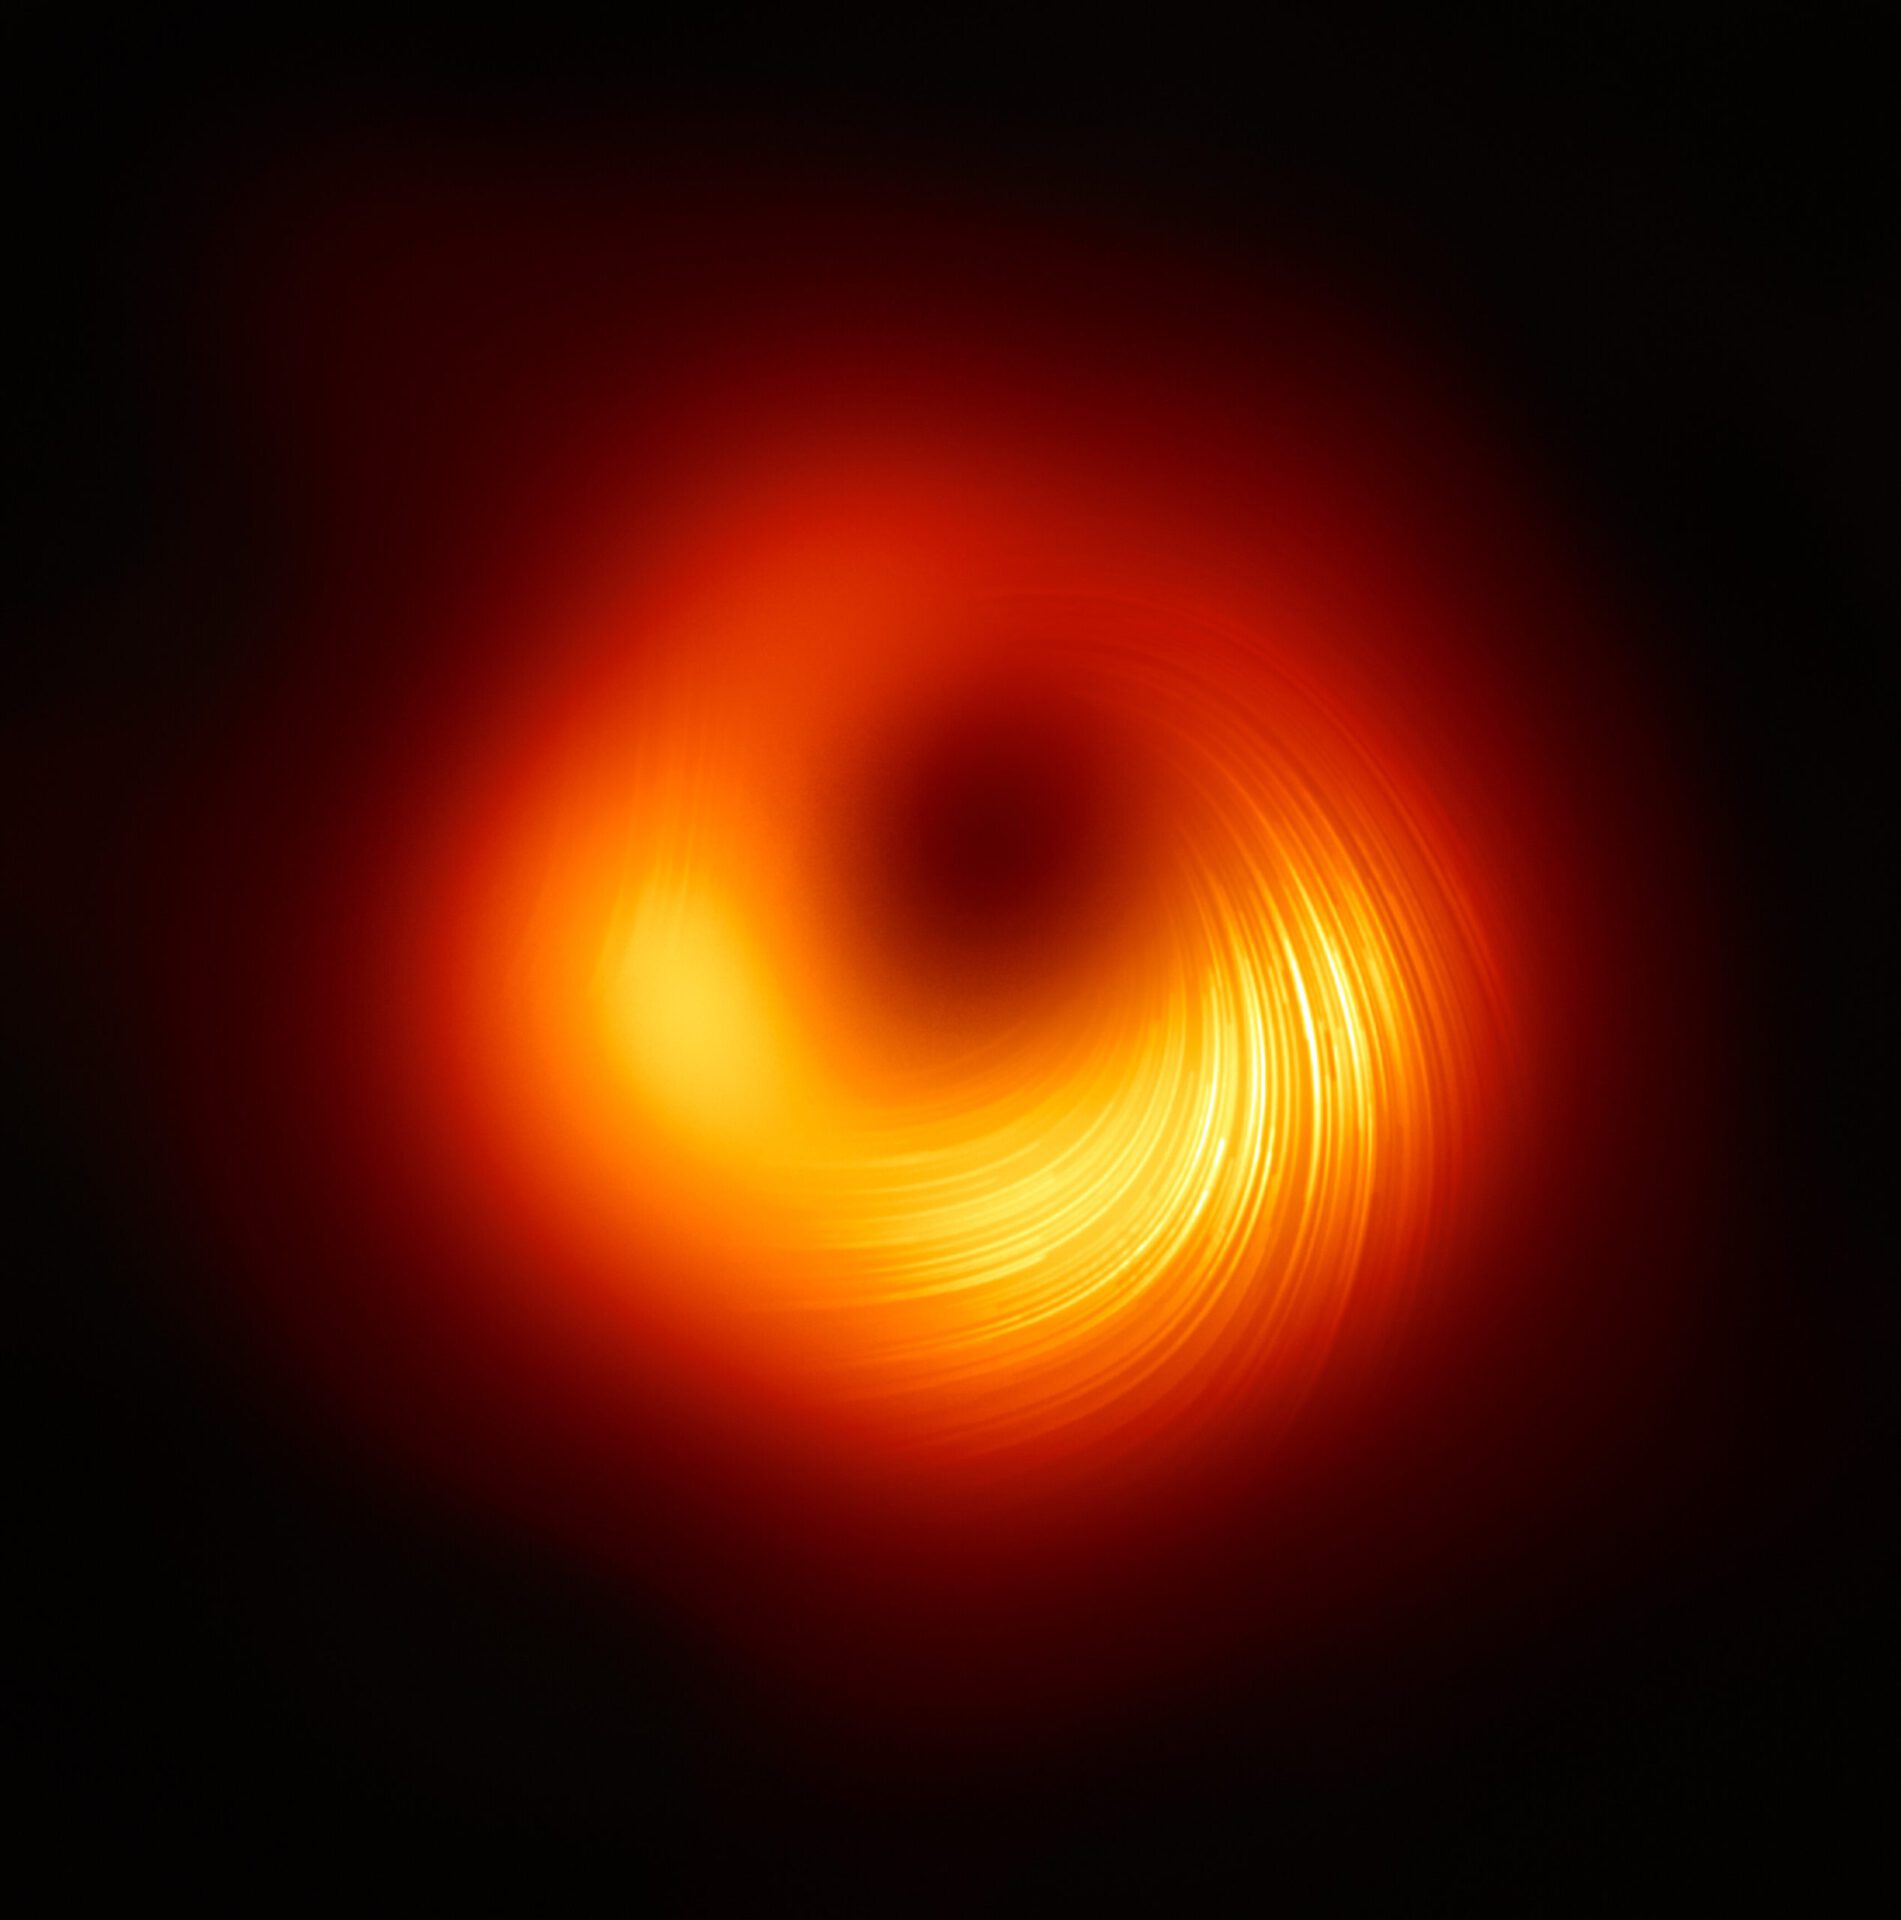 Il gas e la polvere dorati mostrano campi magnetici polarizzati attorno al buco nero supermassiccio nel cuore di M87, come si vede in un’immagine composita acquisita dall’Event Horizon Telescope nel 2021.